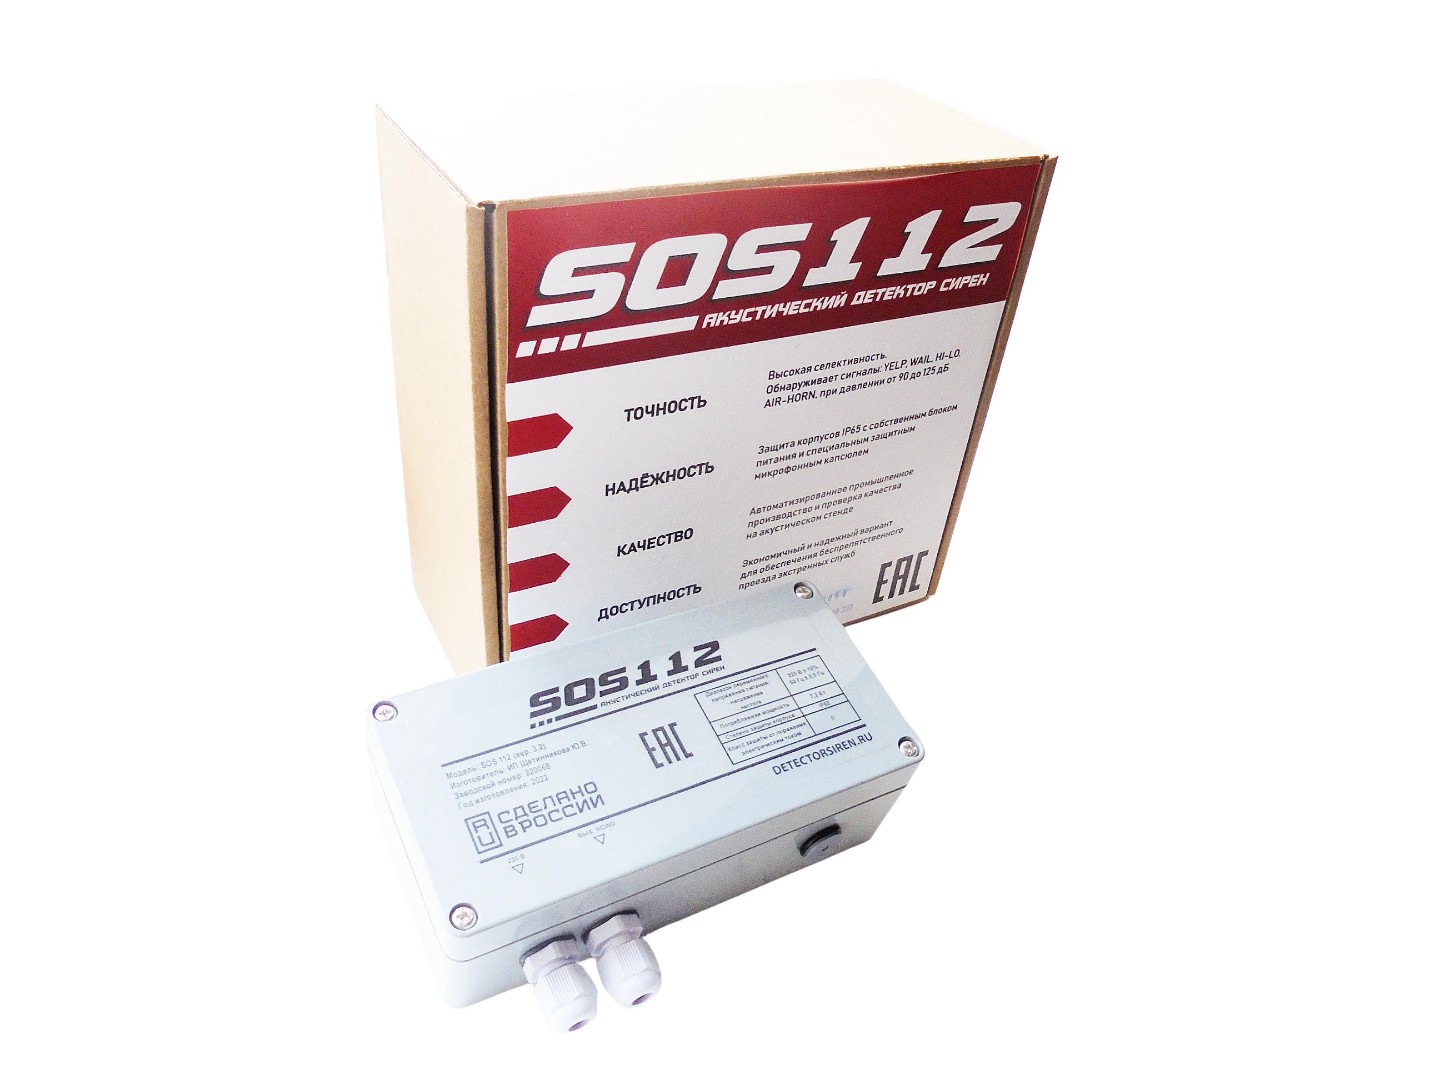 Акустический детектор сирен экстренных служб SOS112 V3.2